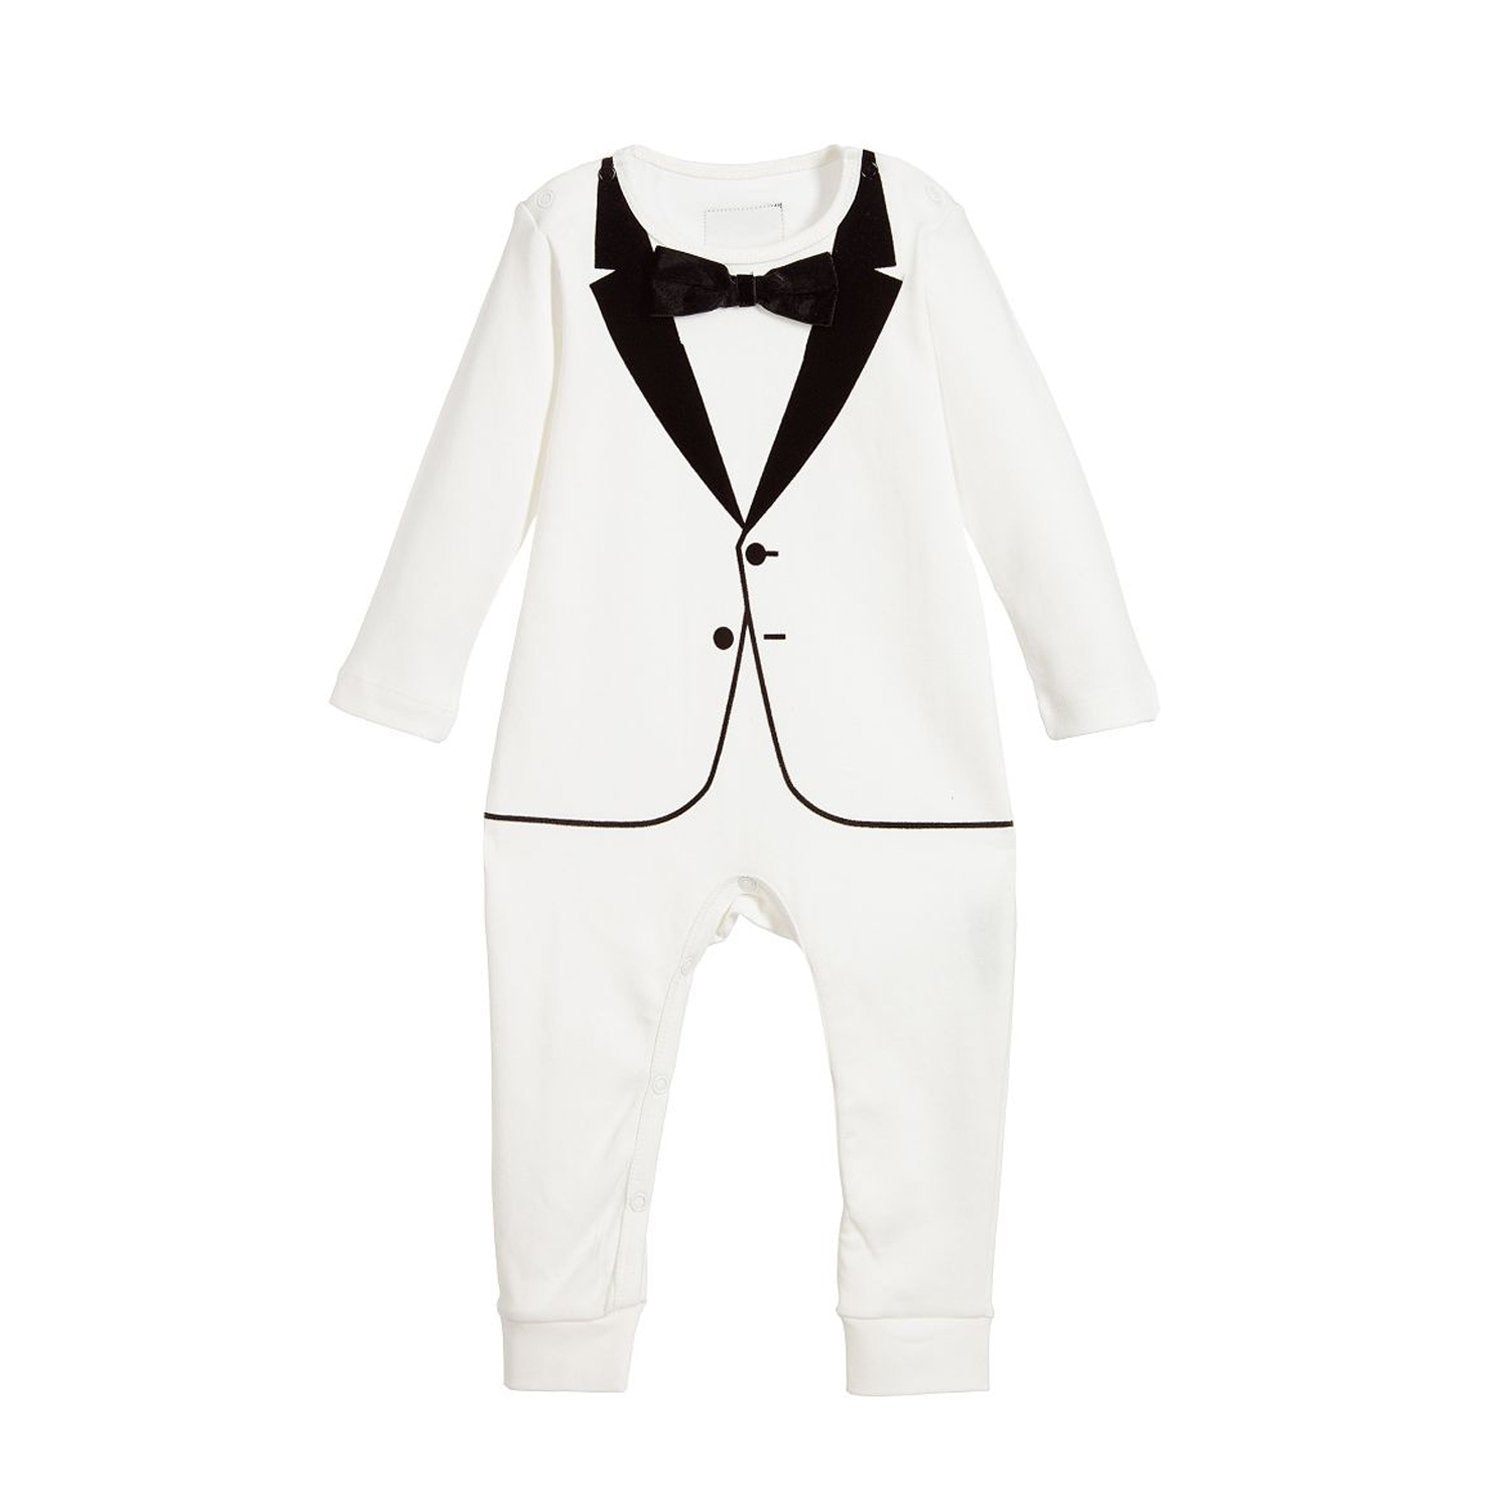 Baby Tuxedo Onesie - Formal Bodysuit for Children - The Tiny Tuxedo ...